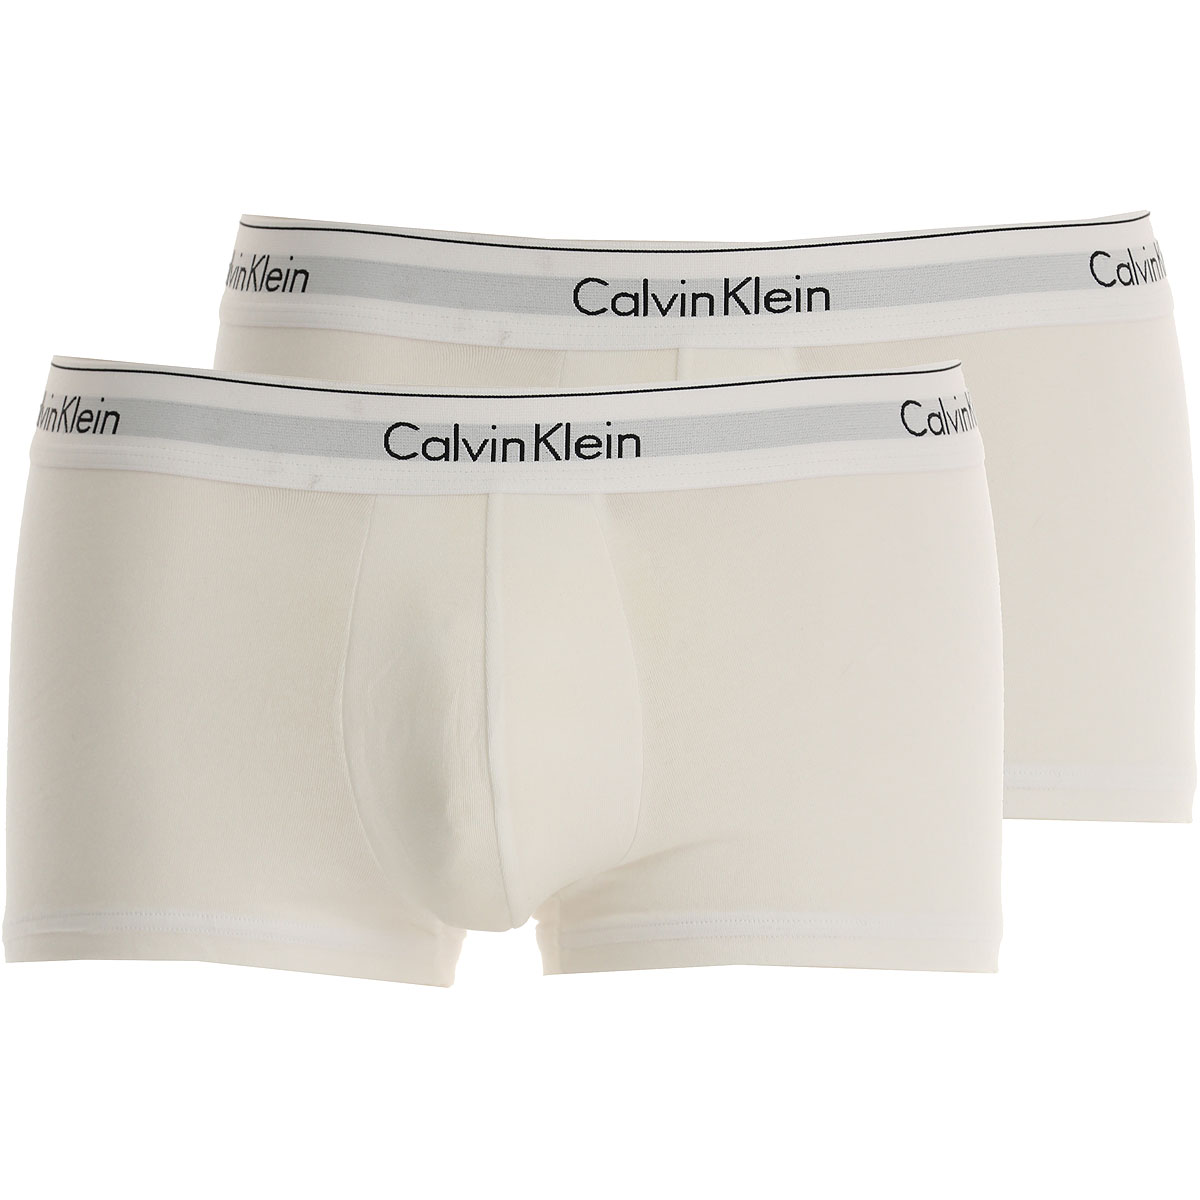 Calvin Klein Boxer Shorts für Herren, Unterhose, Short, Boxer Günstig im Sale, 2, Weiss, Baumwolle, 2017, L M S